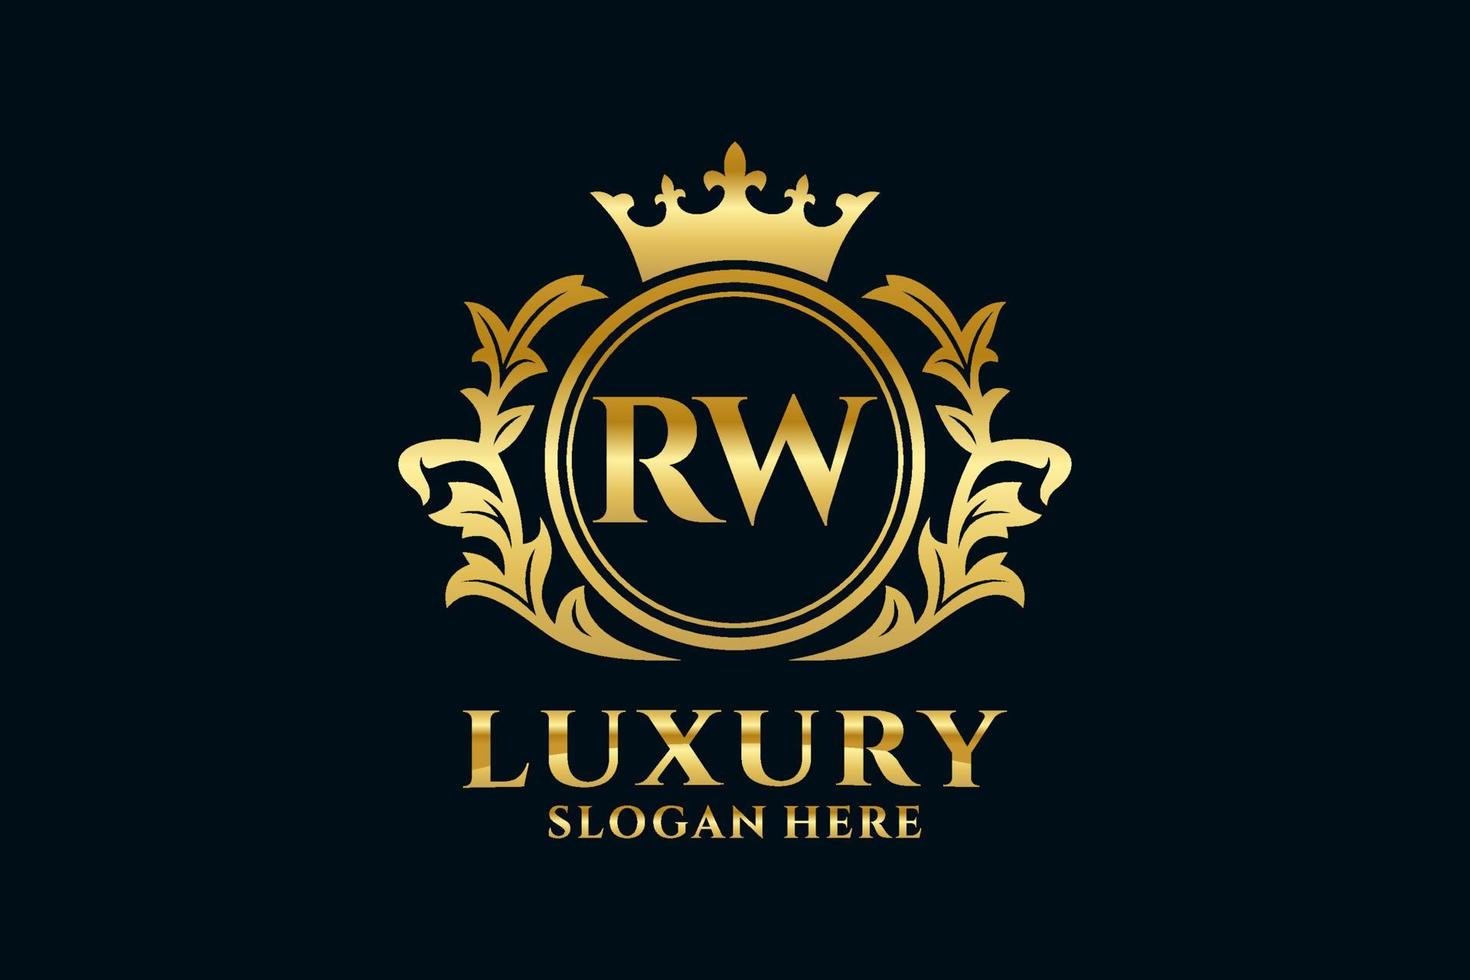 plantilla de logotipo de lujo real con letra rw inicial en arte vectorial para proyectos de marca de lujo y otras ilustraciones vectoriales. vector